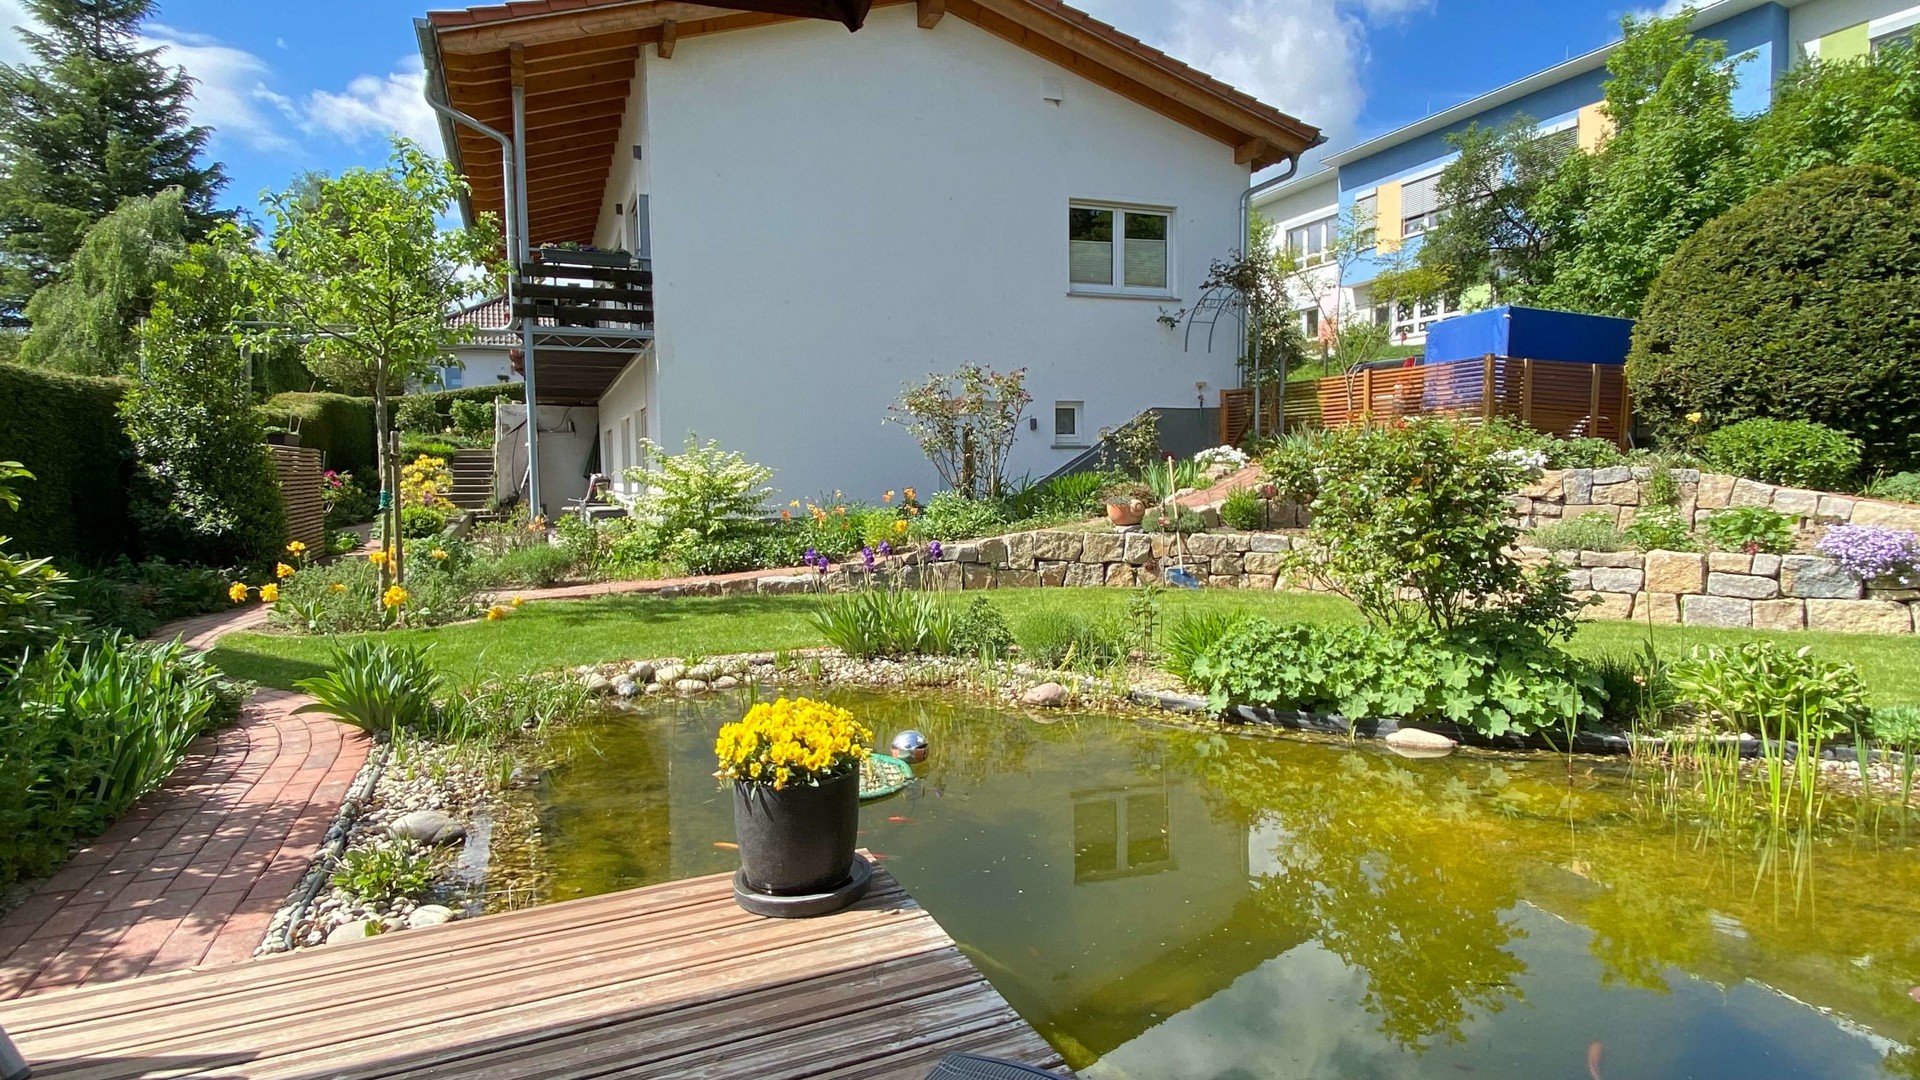 Saniertes Einfamilienhaus mit traumhafter Gartenanlage - Hausansicht